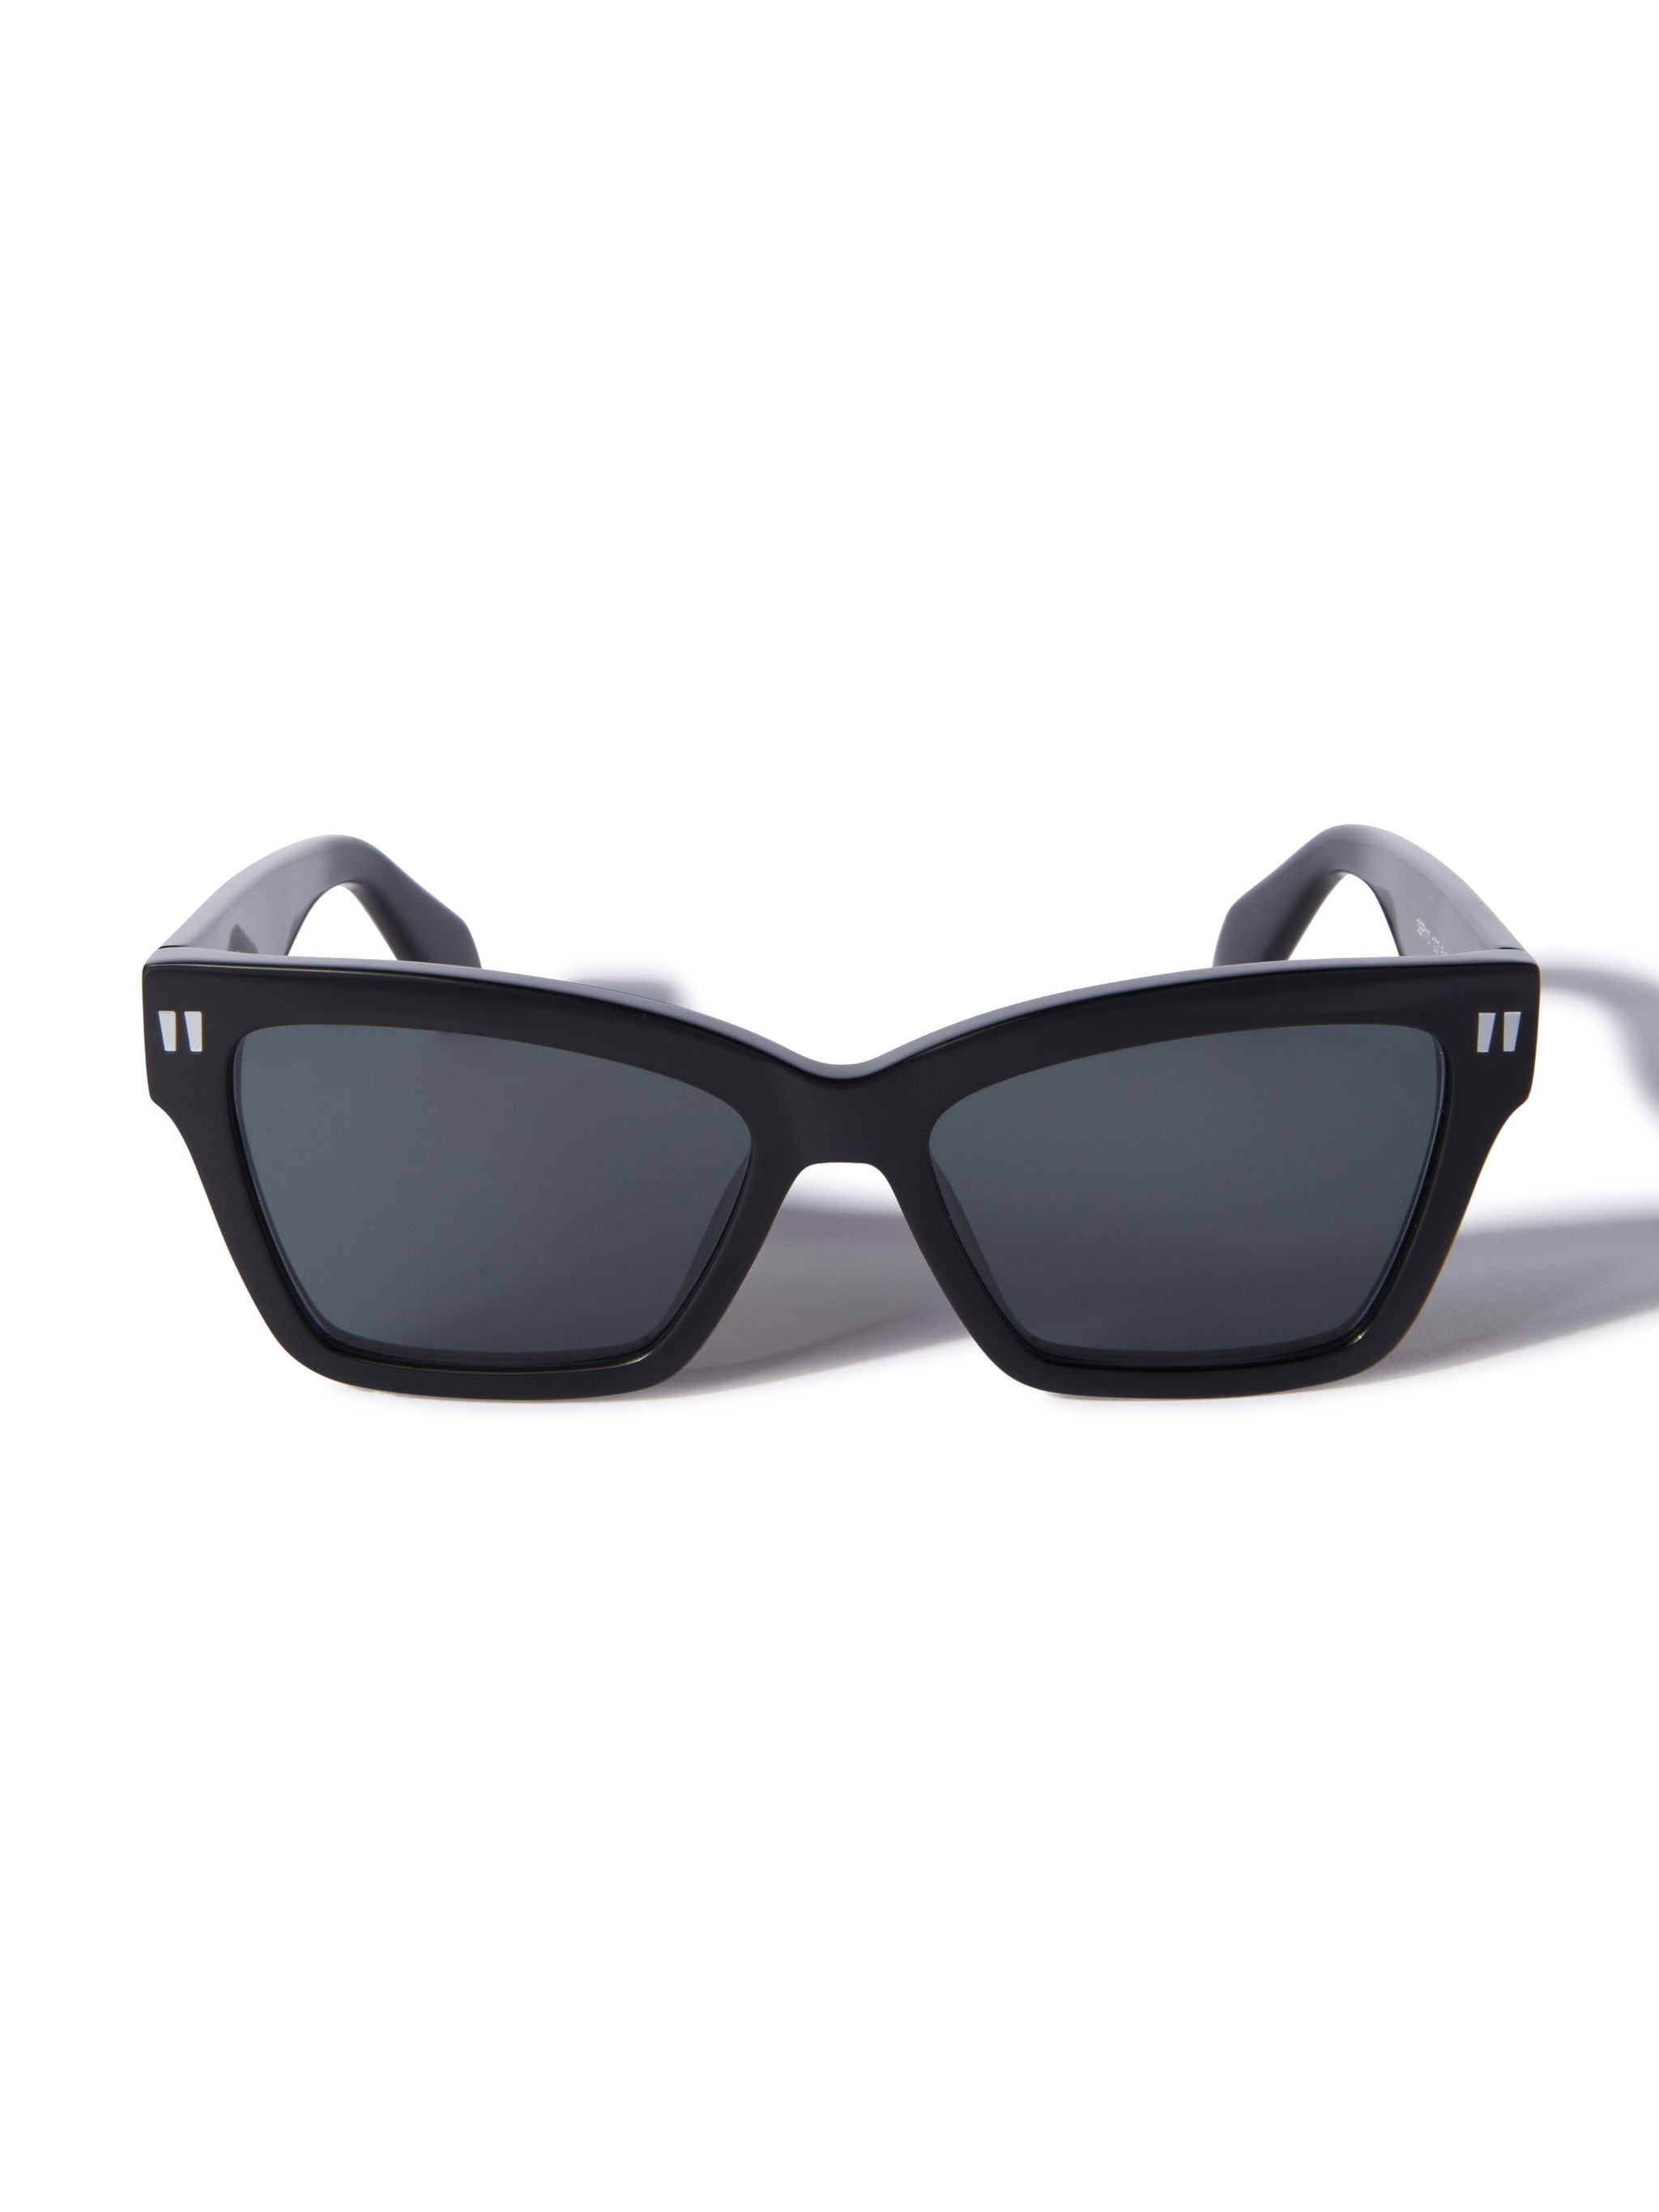 Cincinnati Sunglasses - 1